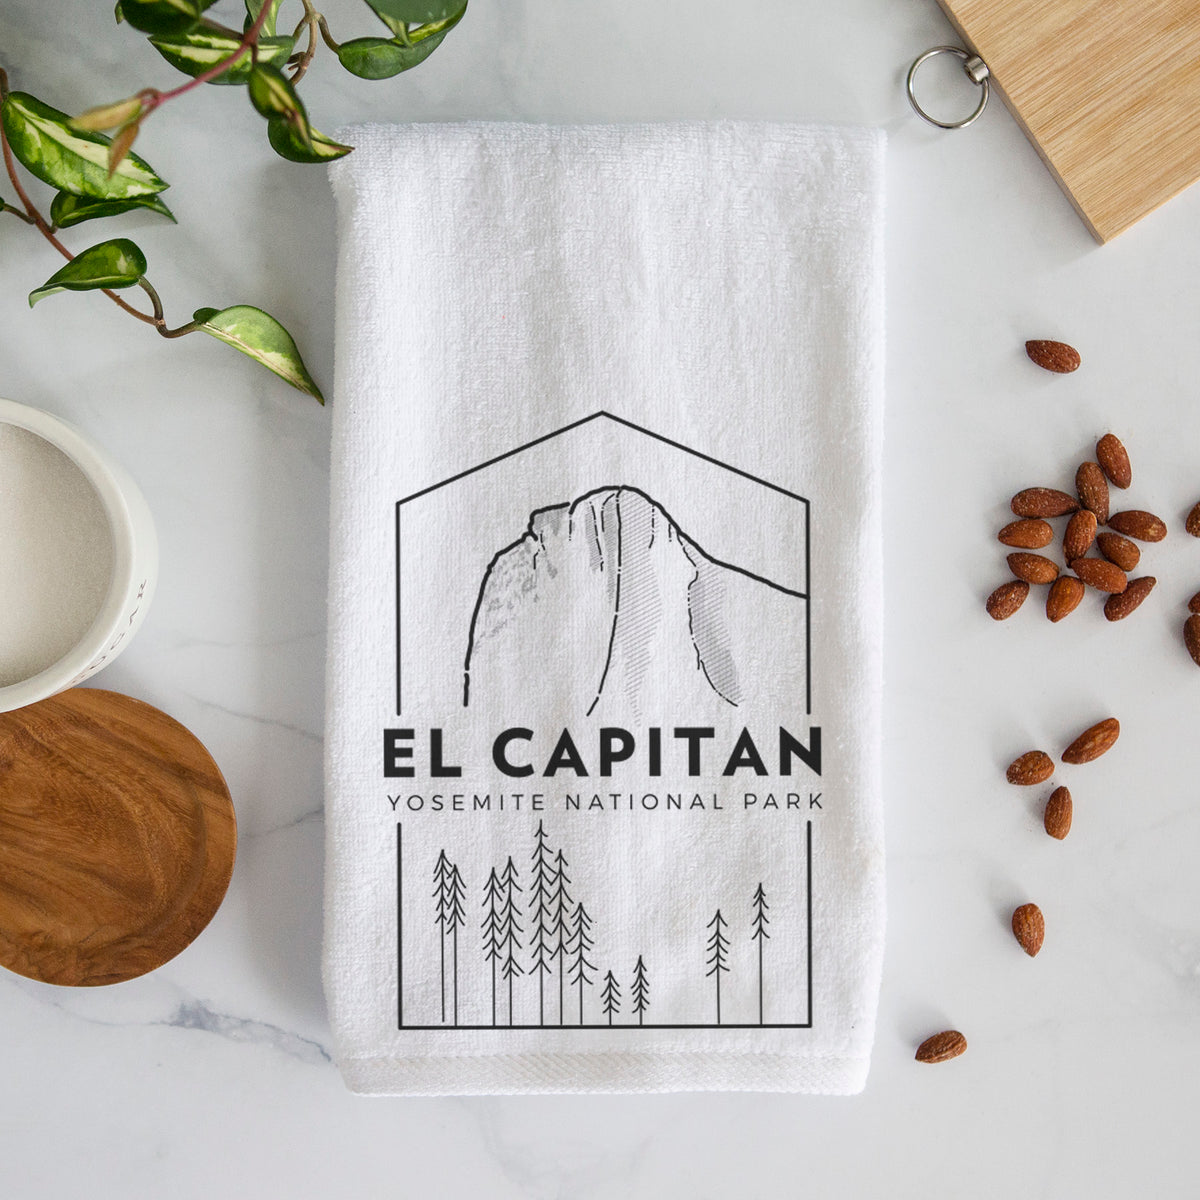 El Capitan - Yosemite National Park Hand Towel